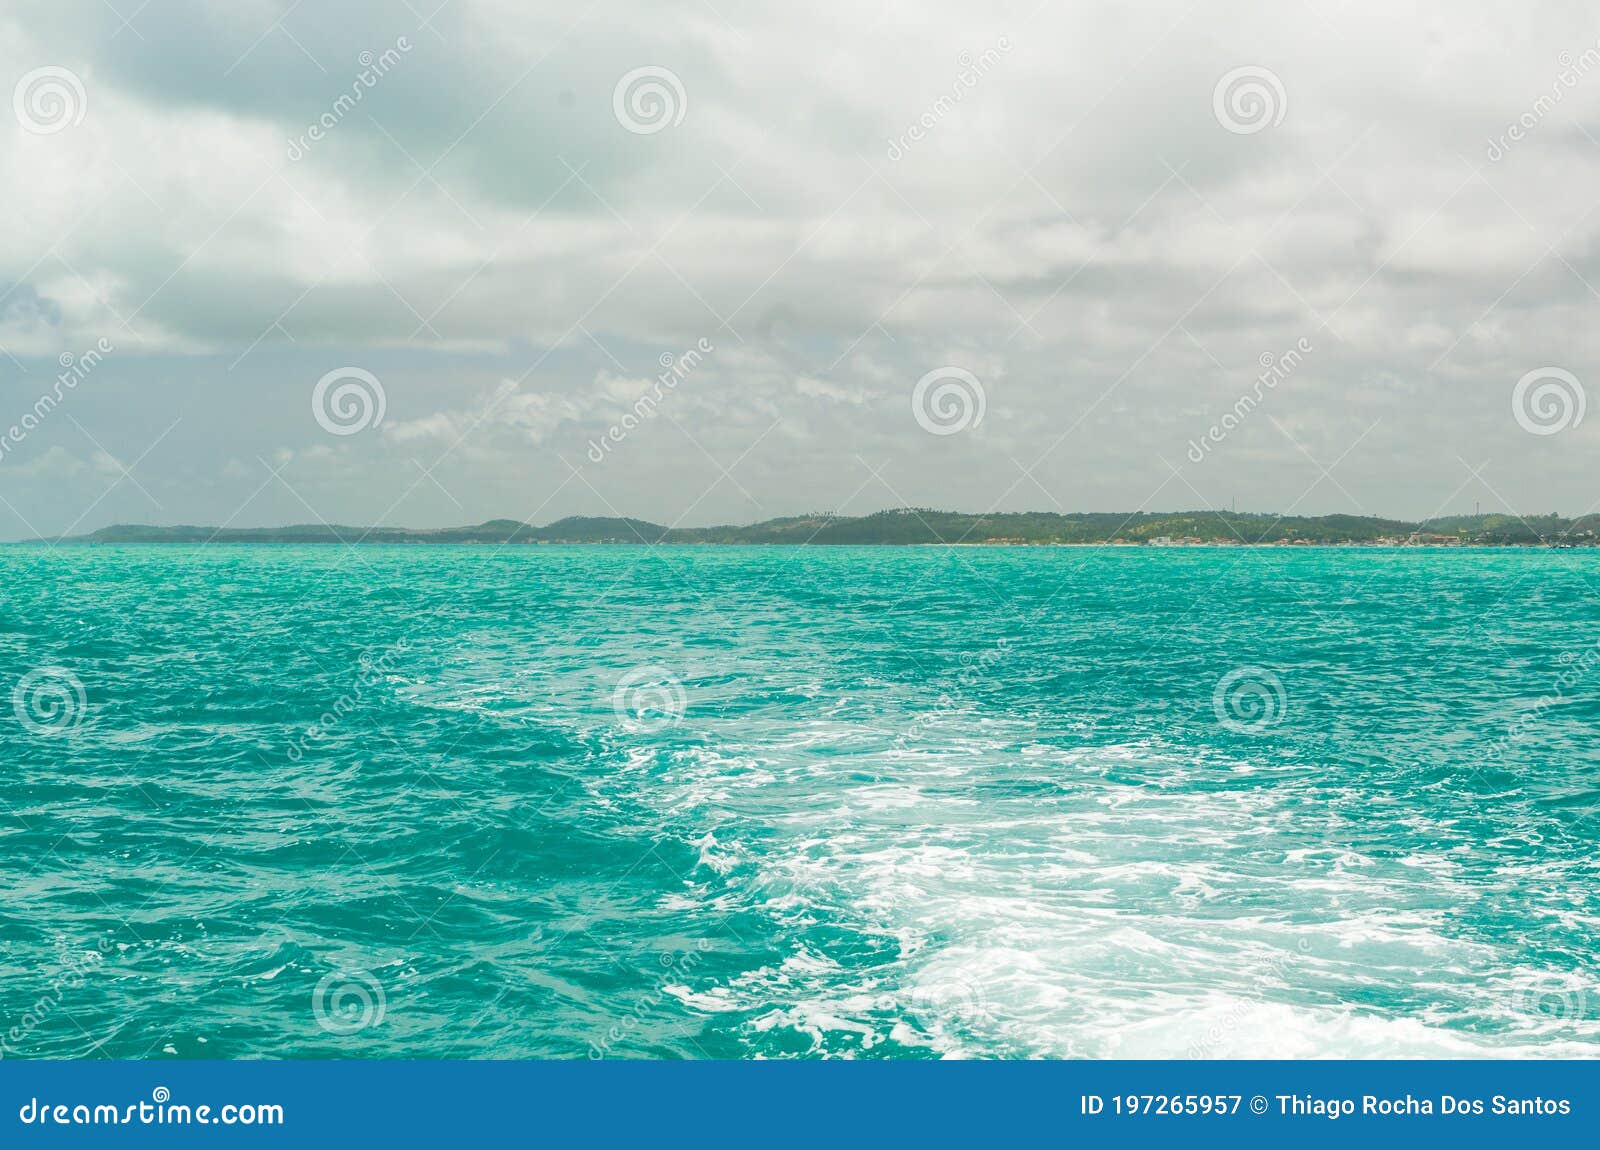 linda imagem de barco navegando em um paraÃÂ­so tropical.beautiful image of boat sailing in a tropical paradise